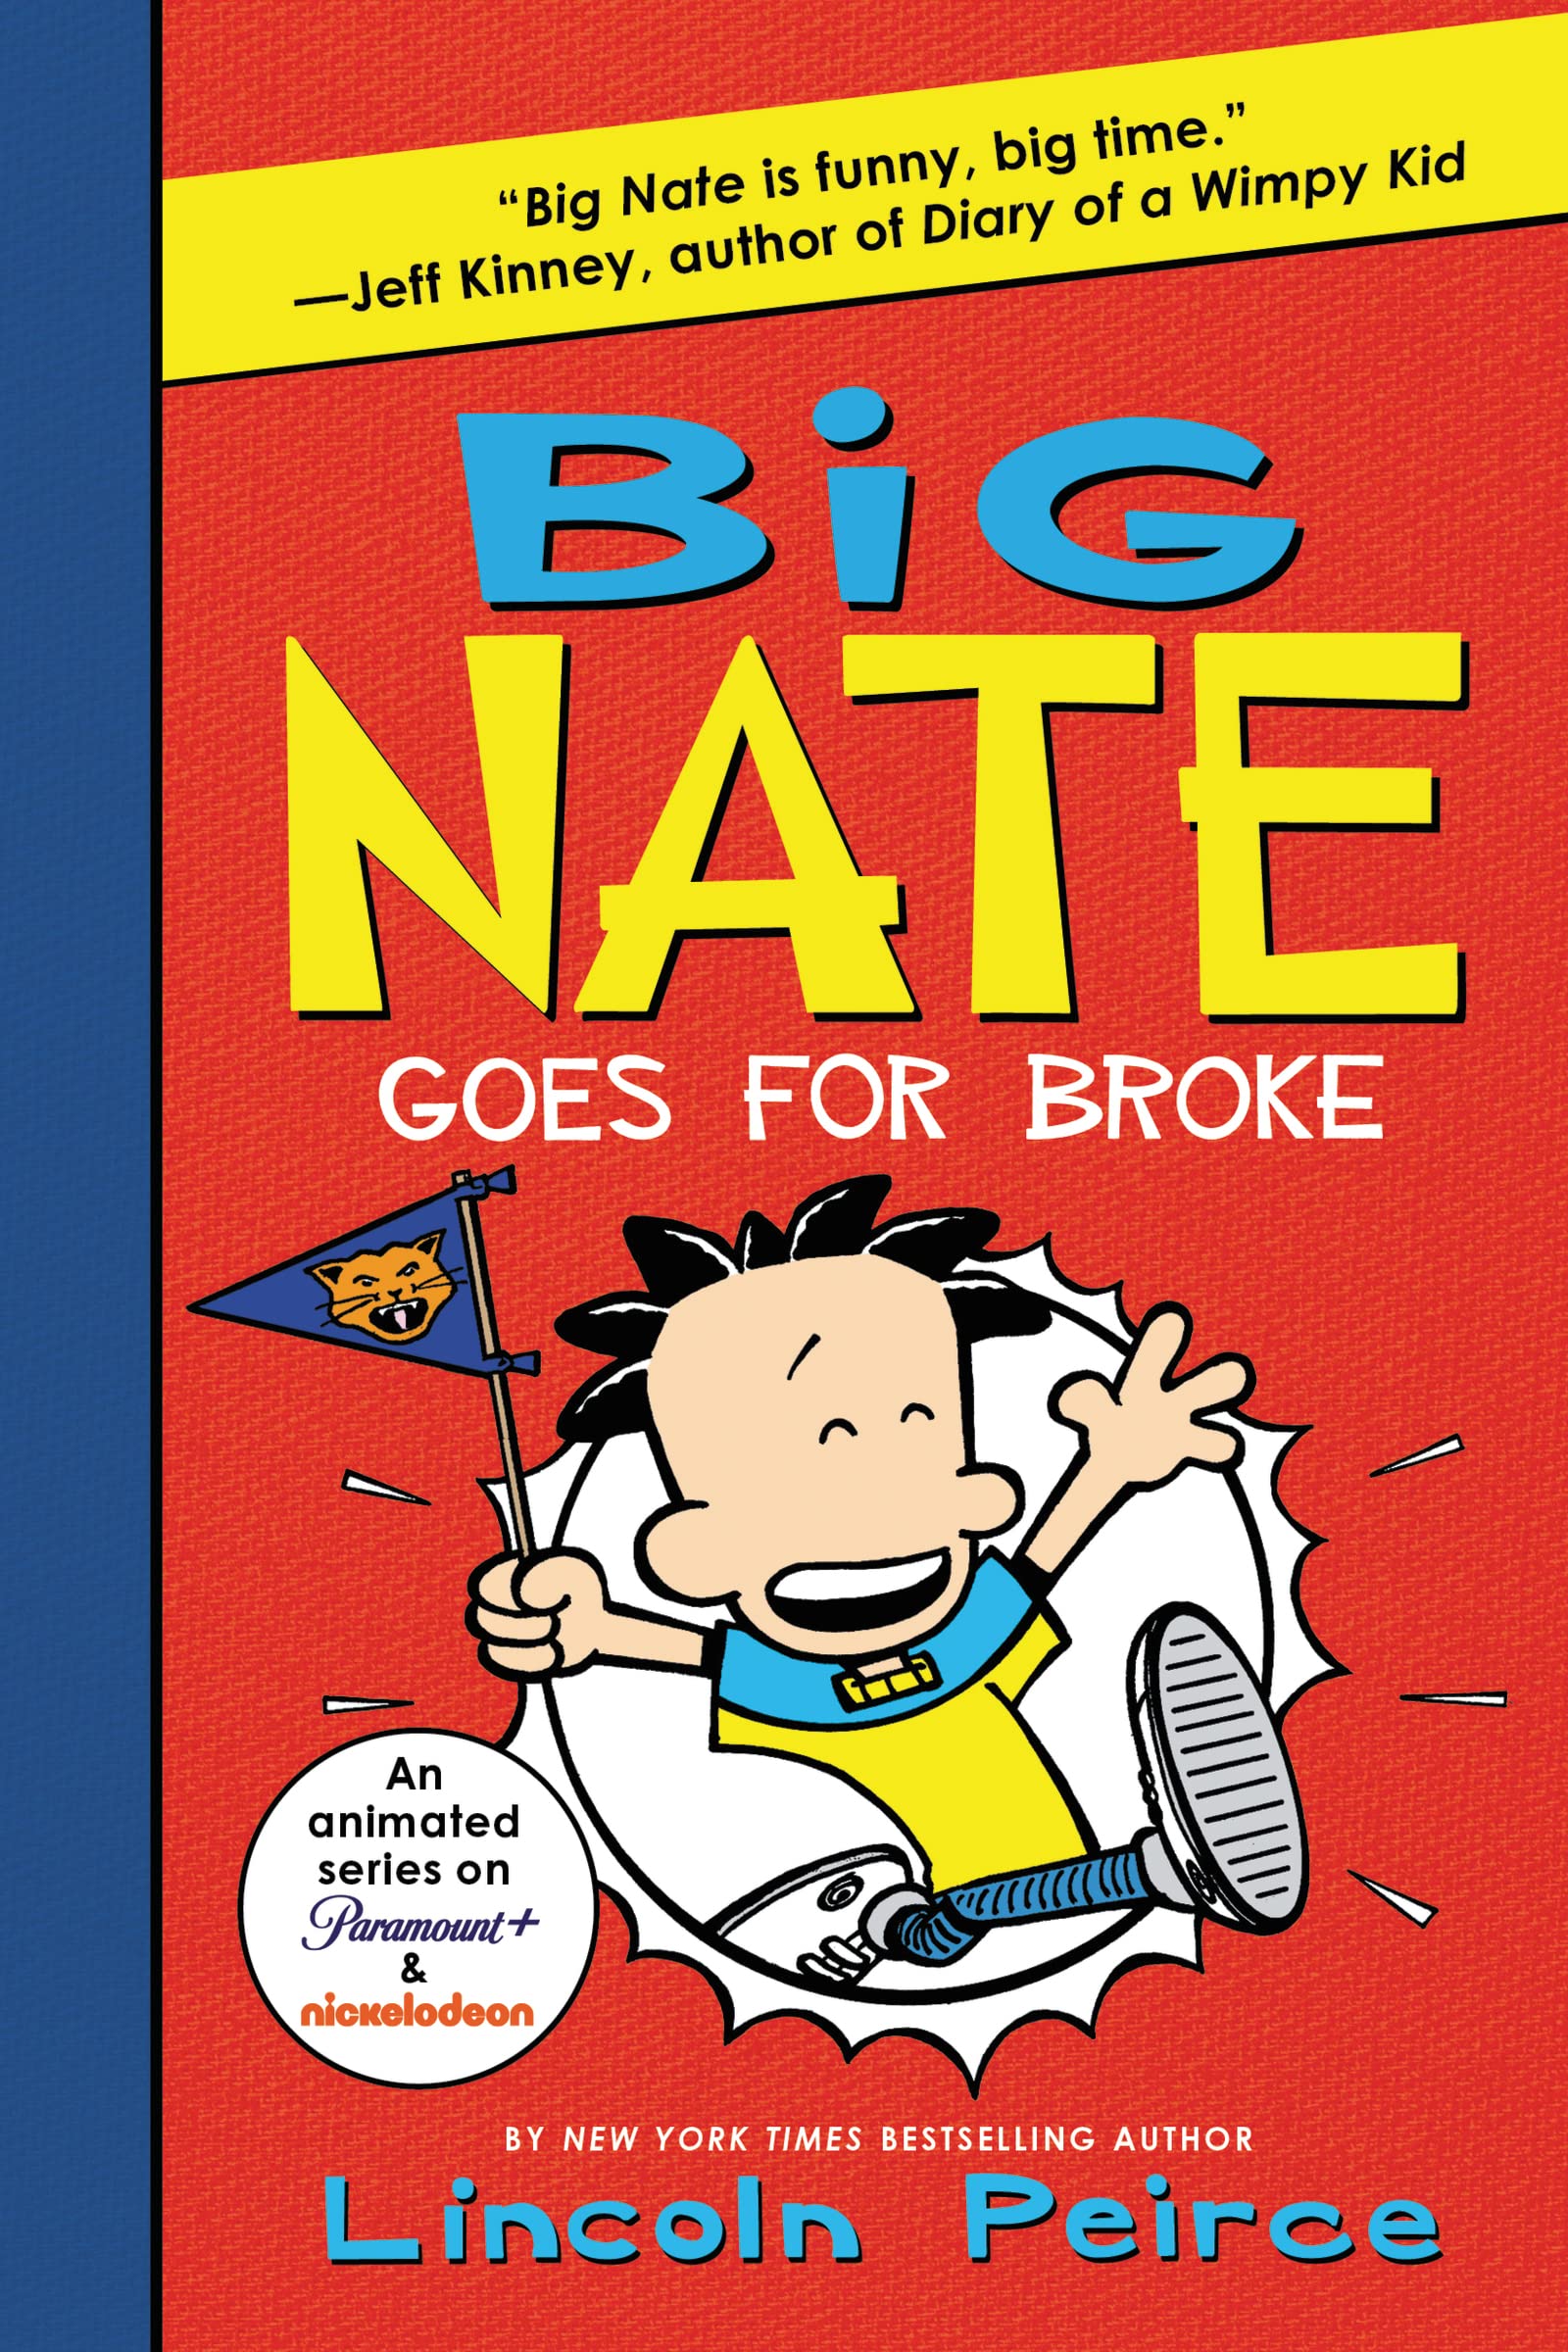 Big Nate #4 Goes For Broke